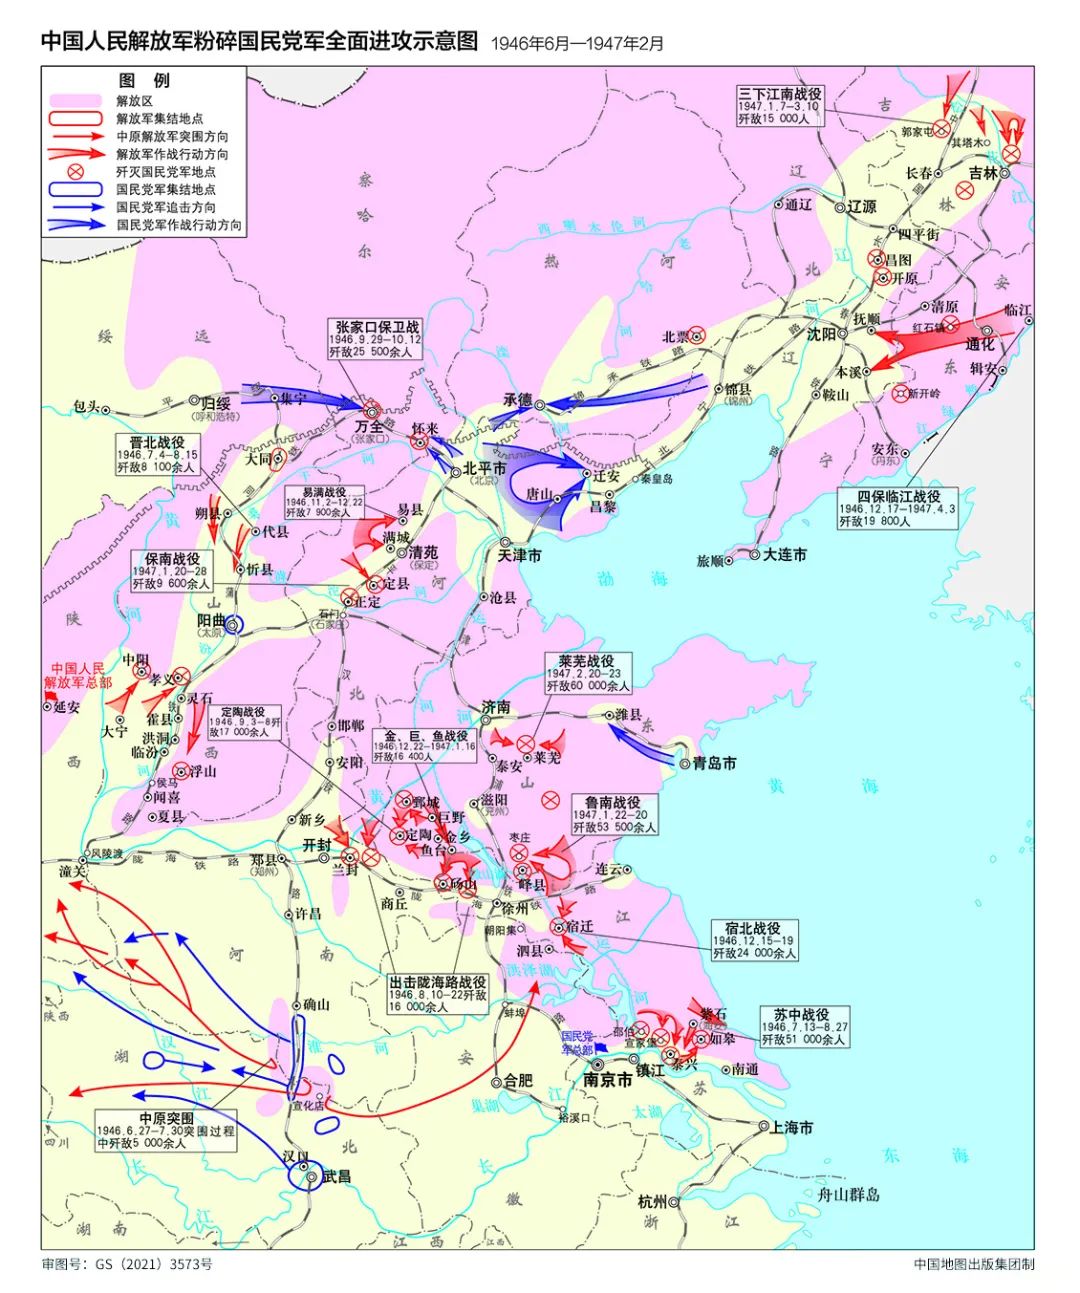 正文 中国地图出版集团编制的《中国共产党100年地图集》即将出版